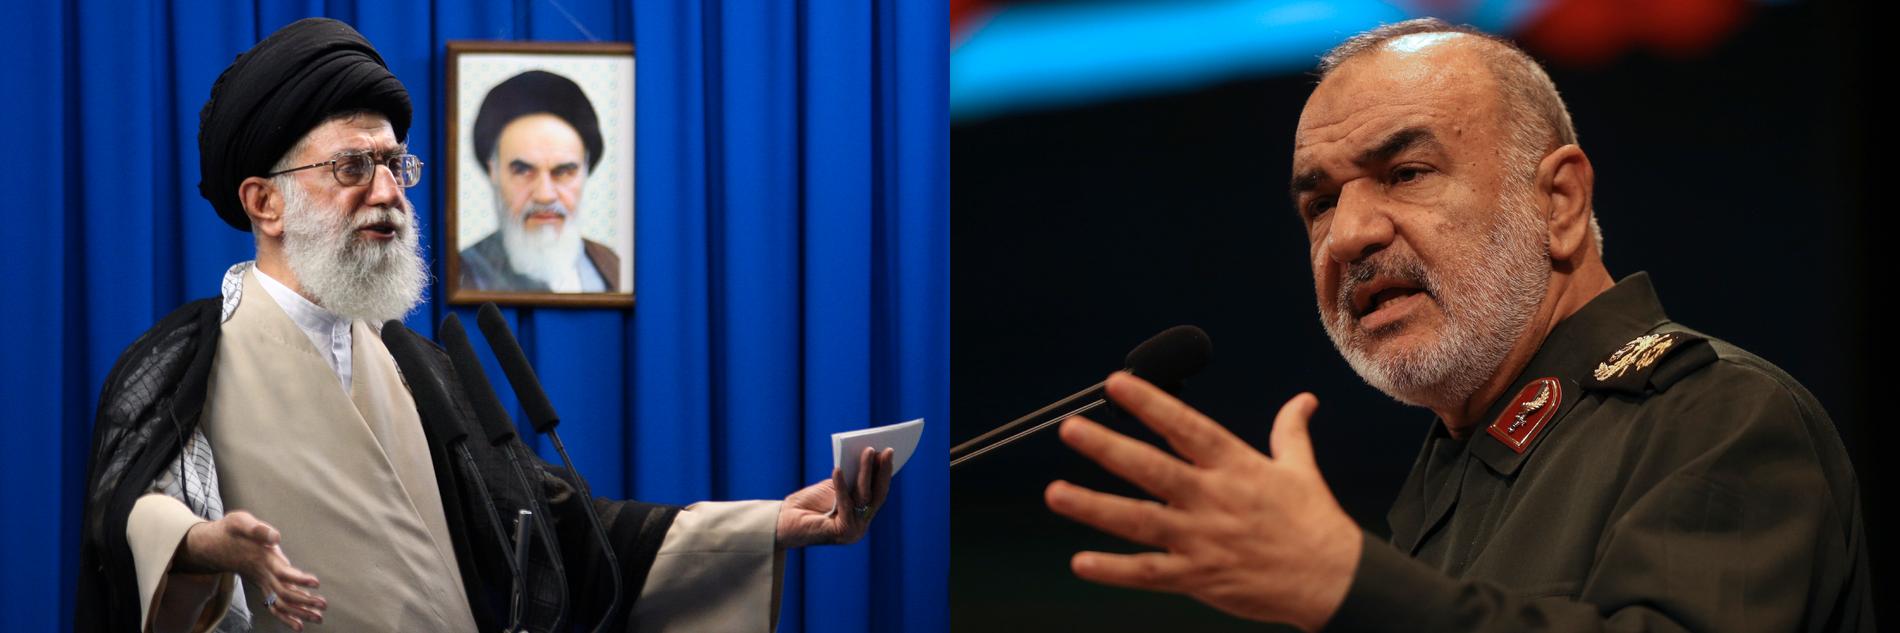 Irans högste ledare Ali Khamenei och av EU sanktionsdrabbade general Hossein Salami (till höger). Montage/Arkivbild.